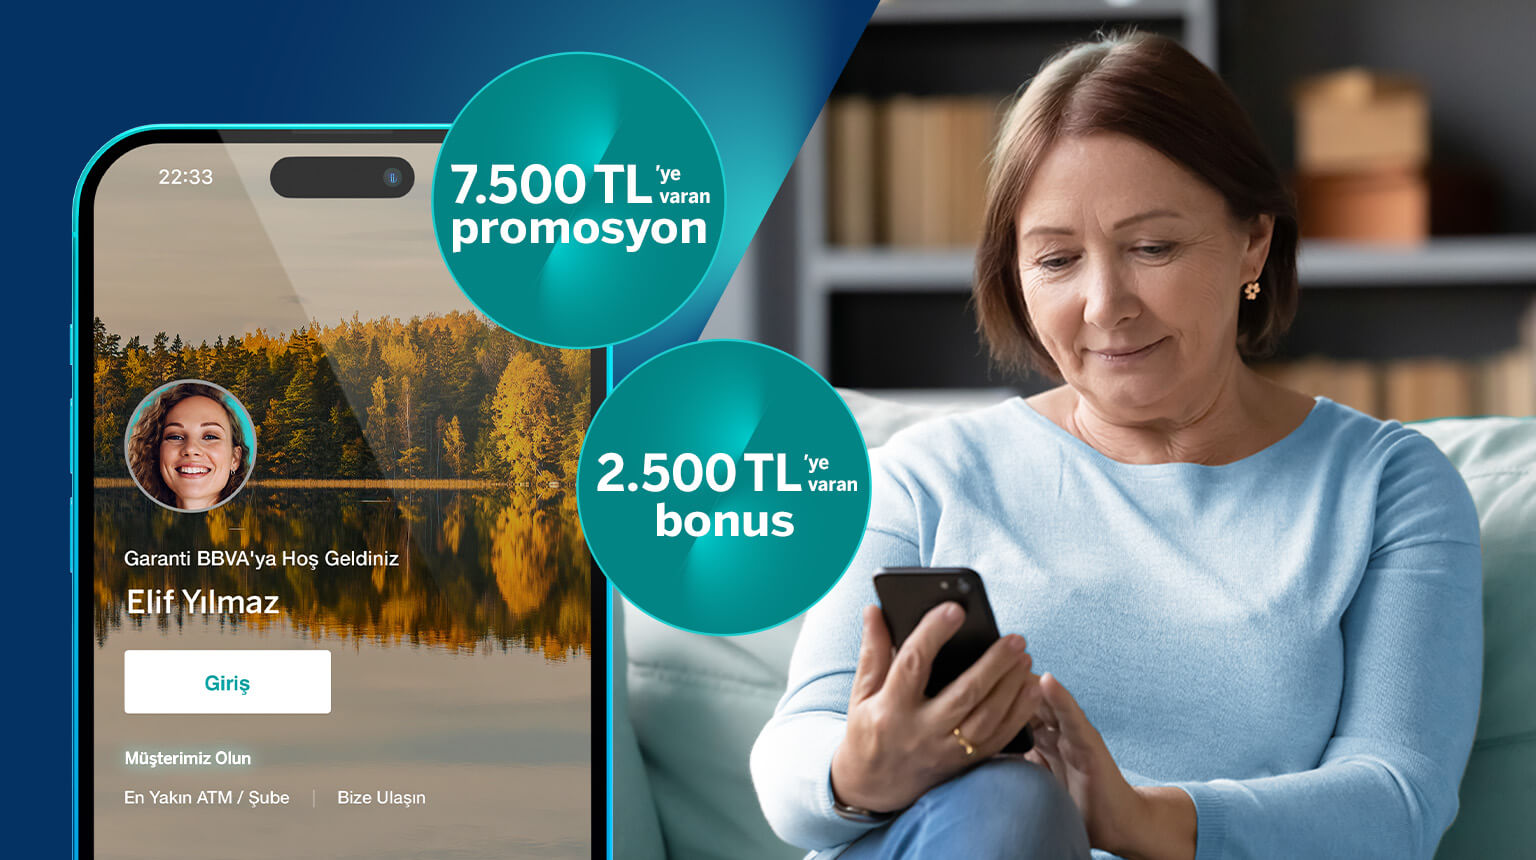 Mobil'den müşterimiz olun, emekli maaşınızı mobil üzerinden taşıyın, 500 TL ve üzeri harcamanıza 2500 TL bonus kazanın!